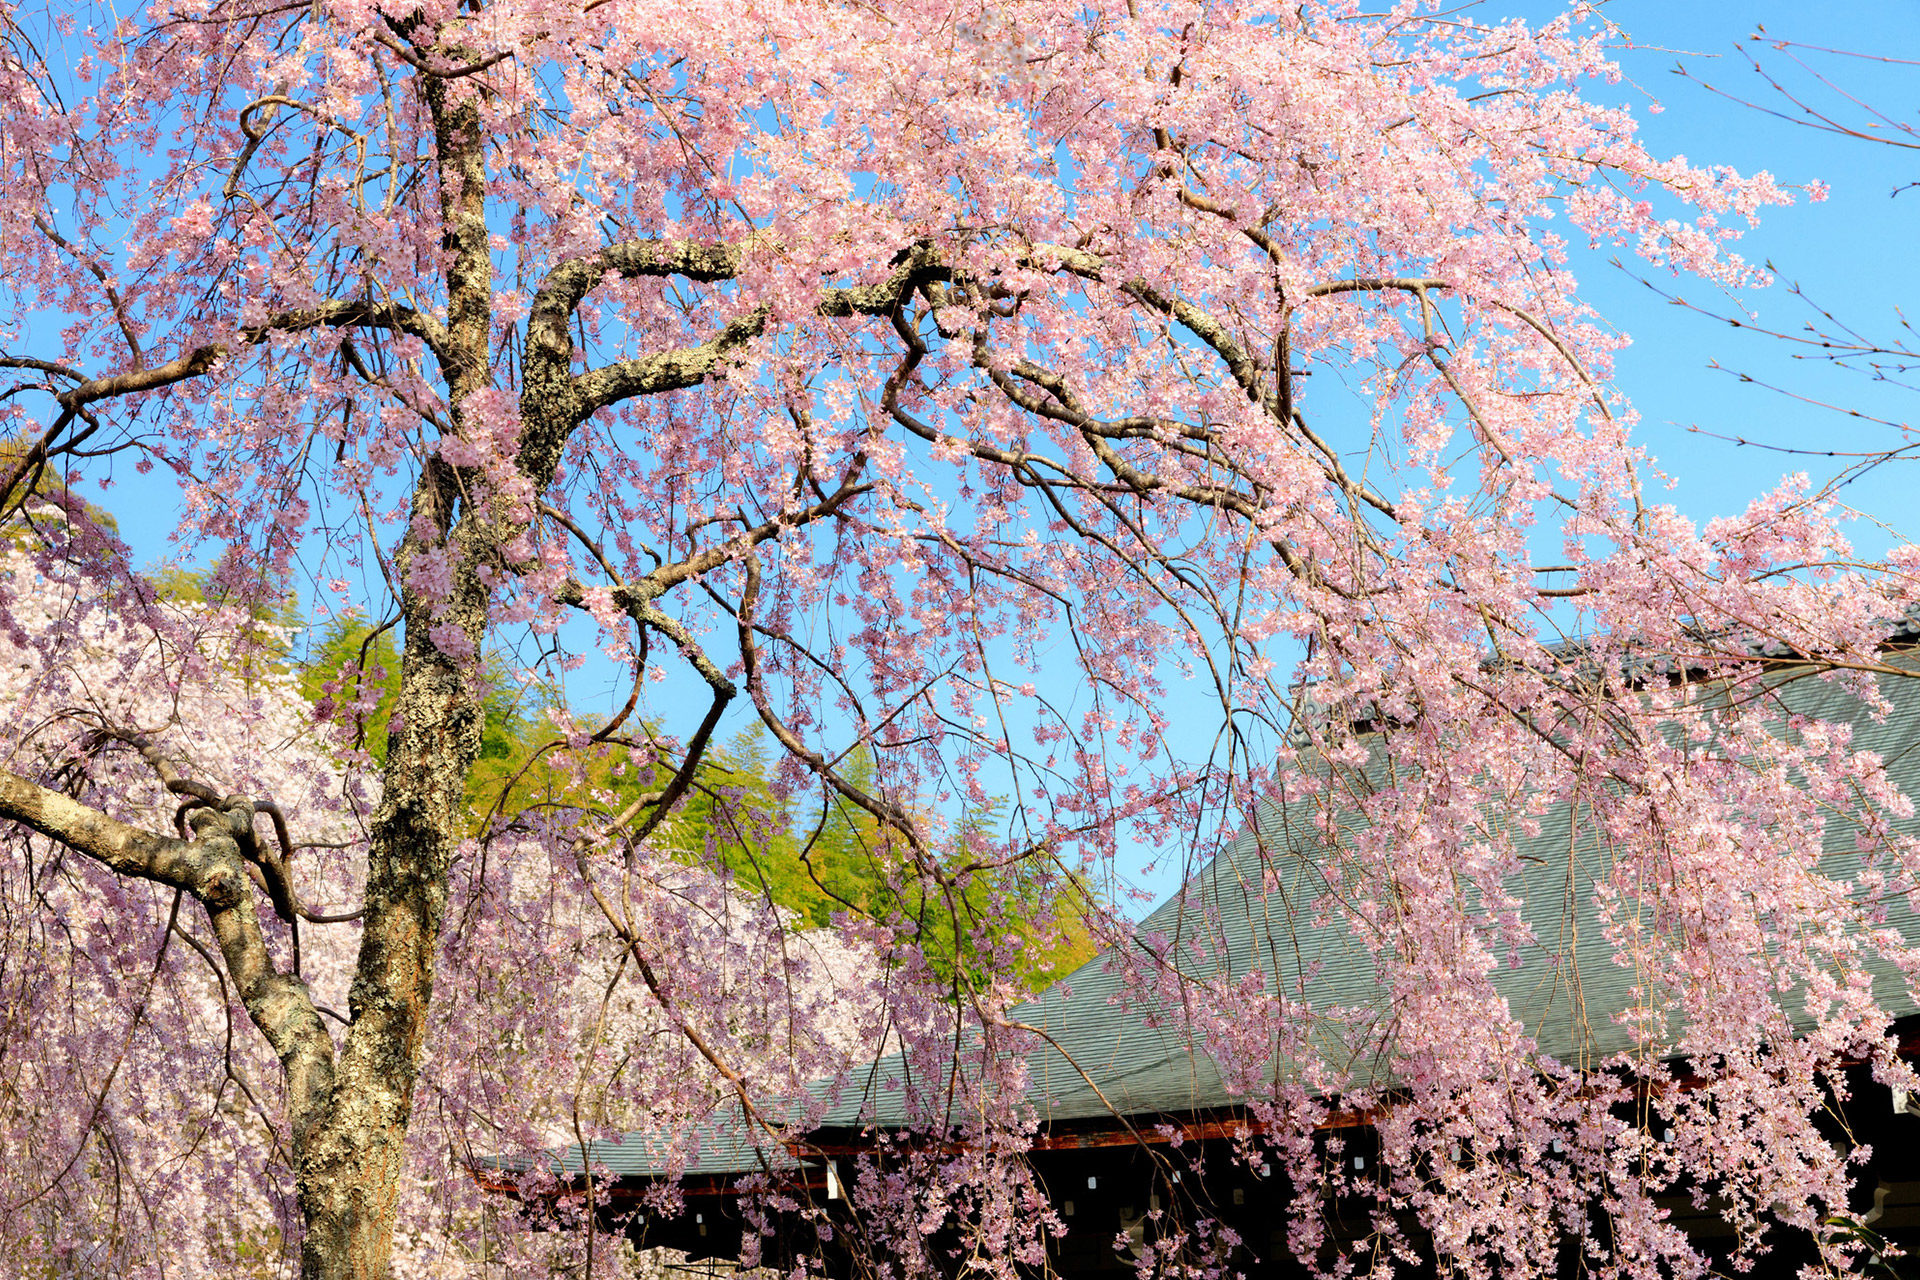 京都の有名観光地 嵐山 ここで見られる桜の絶景とは Caedekyoto カエデ京都 紅葉と伝統美を引き継ぐバッグ